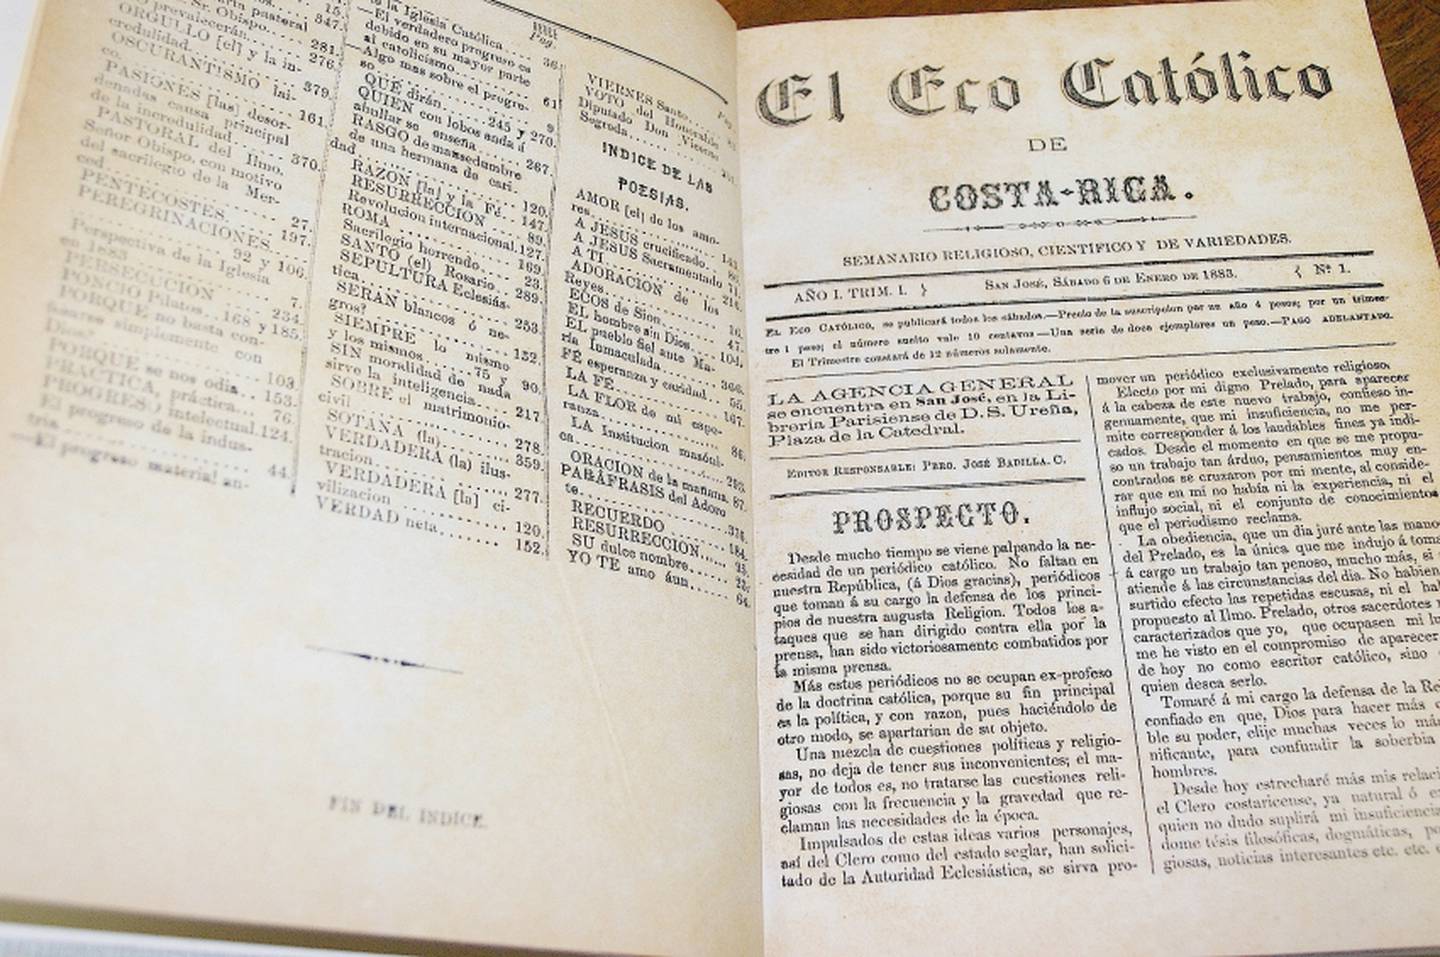 El periódico Eco Católico de Costa Rica, está celebrando este 6 de enero del 2023 sus 140 años de existencia ya que se fundó en 1883